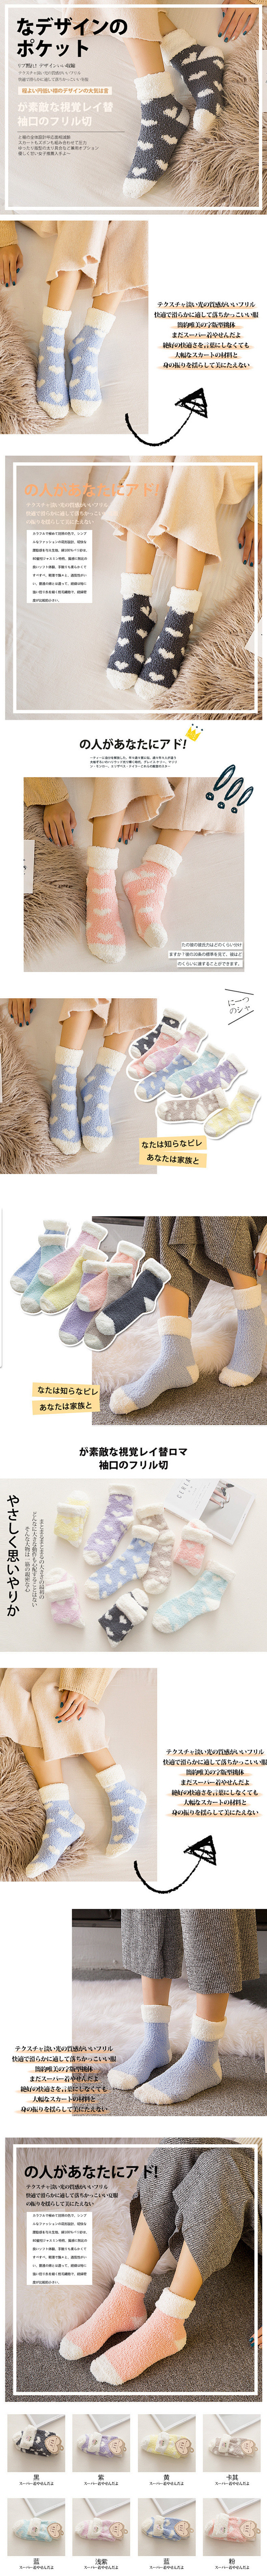 日系袜子详情页